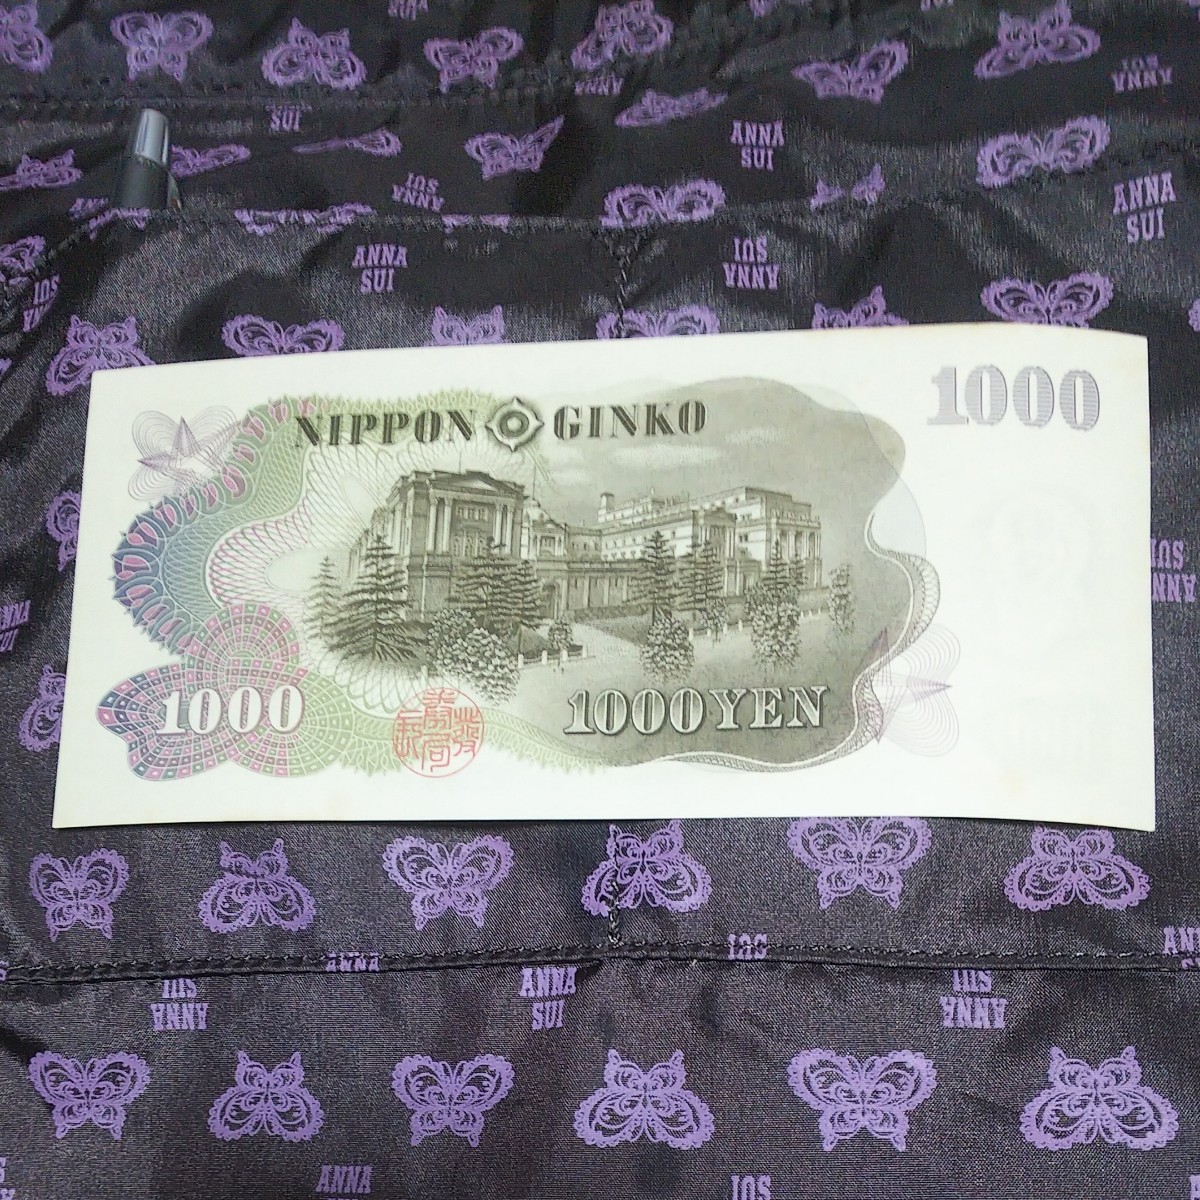 伊藤博文 旧紙幣 千円札